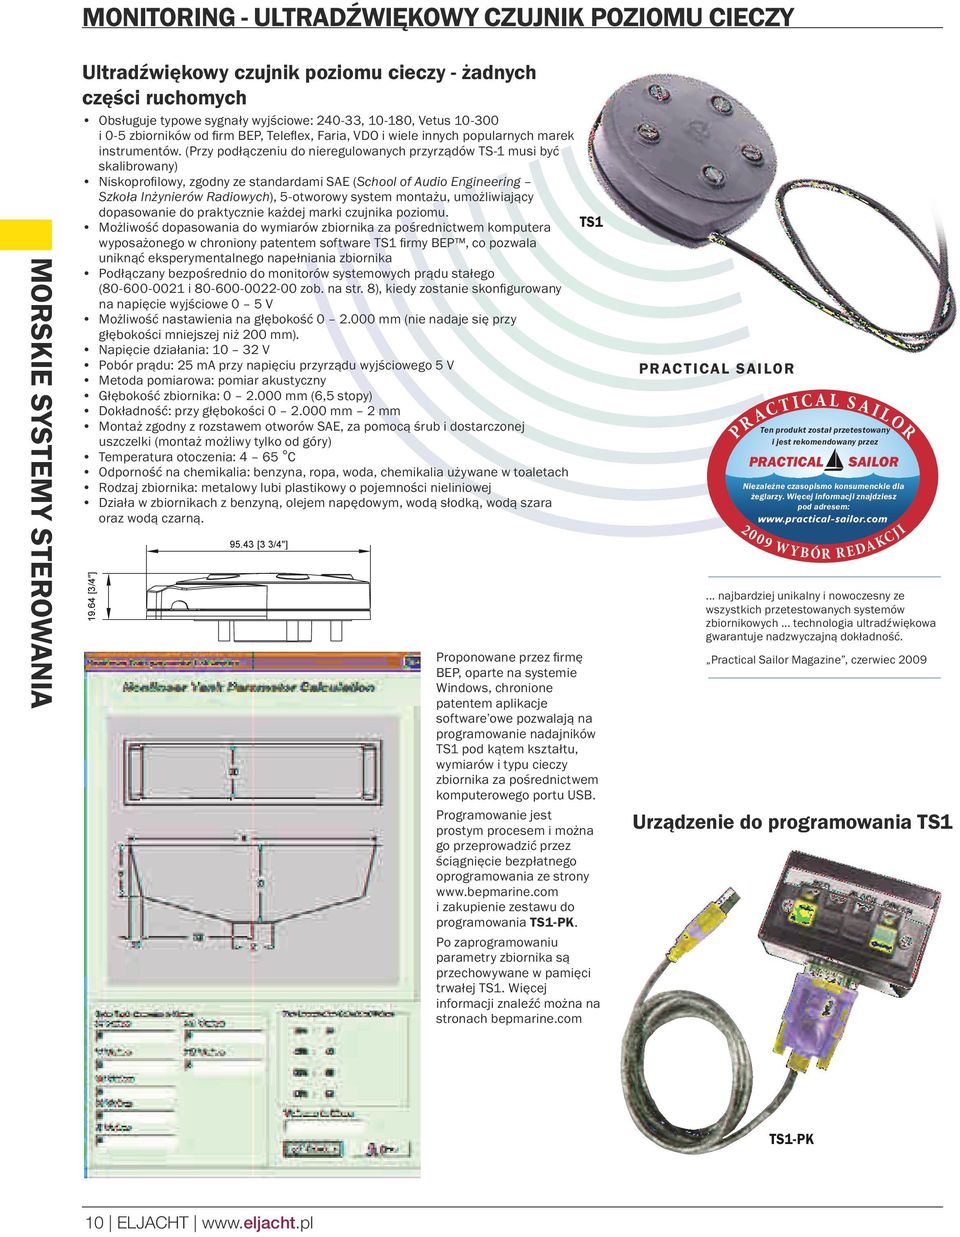 (Przy podłączeniu do nieregulowanych przyrządów TS-1 musi być skalibrowany) Niskoprofilowy, zgodny ze standardami SAE ( School of Audio Engineering Szkoła Inżynierów Radiowych), 5-otworowy system